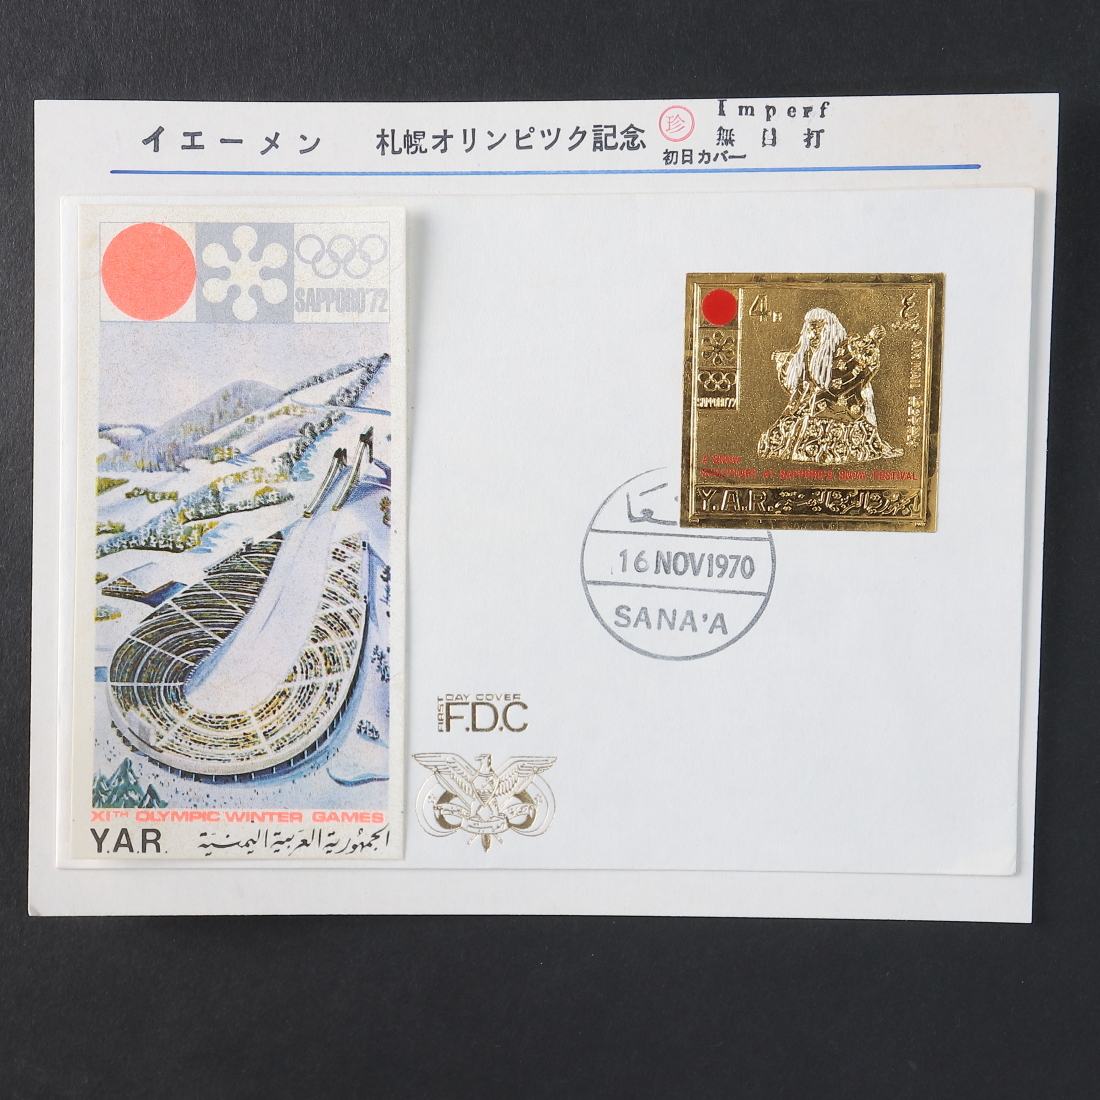 Yahoo!オークション -「札幌オリンピック 切手」(初日カバー) (切手